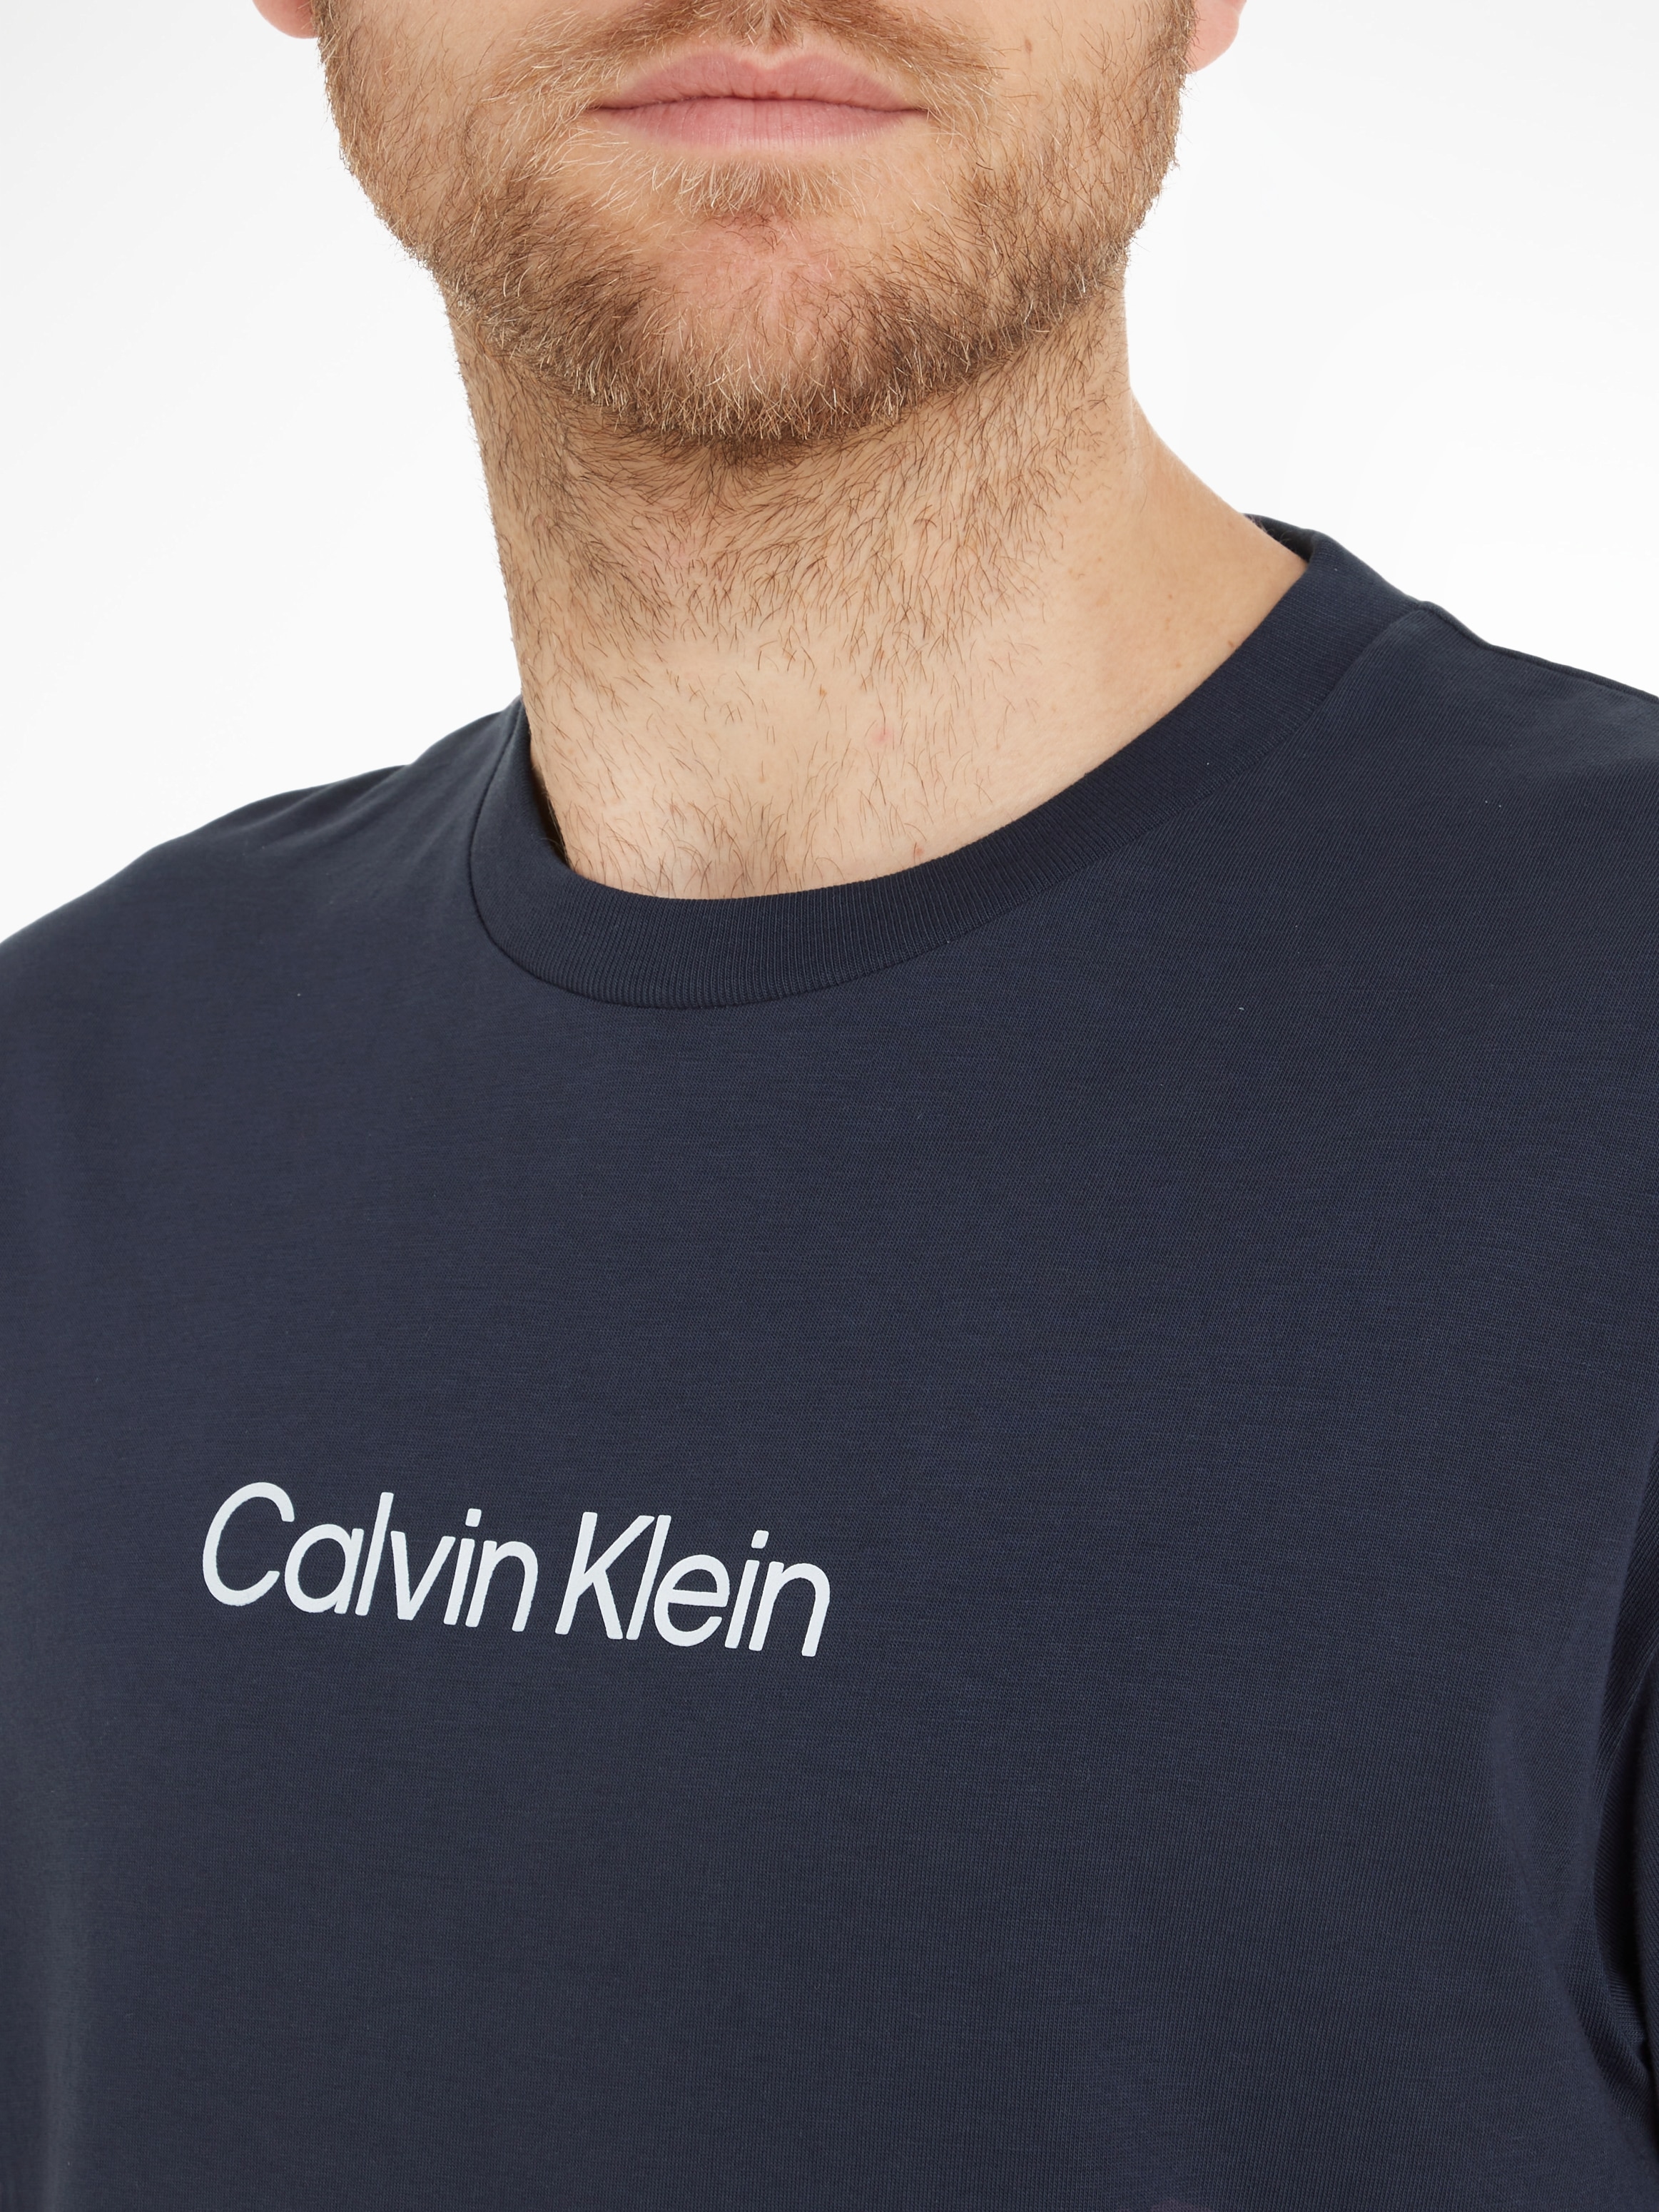 bei »HERO COMFORT T-SHIRT«, aufgedrucktem mit LOGO Markenlabel Klein Calvin T-Shirt ♕